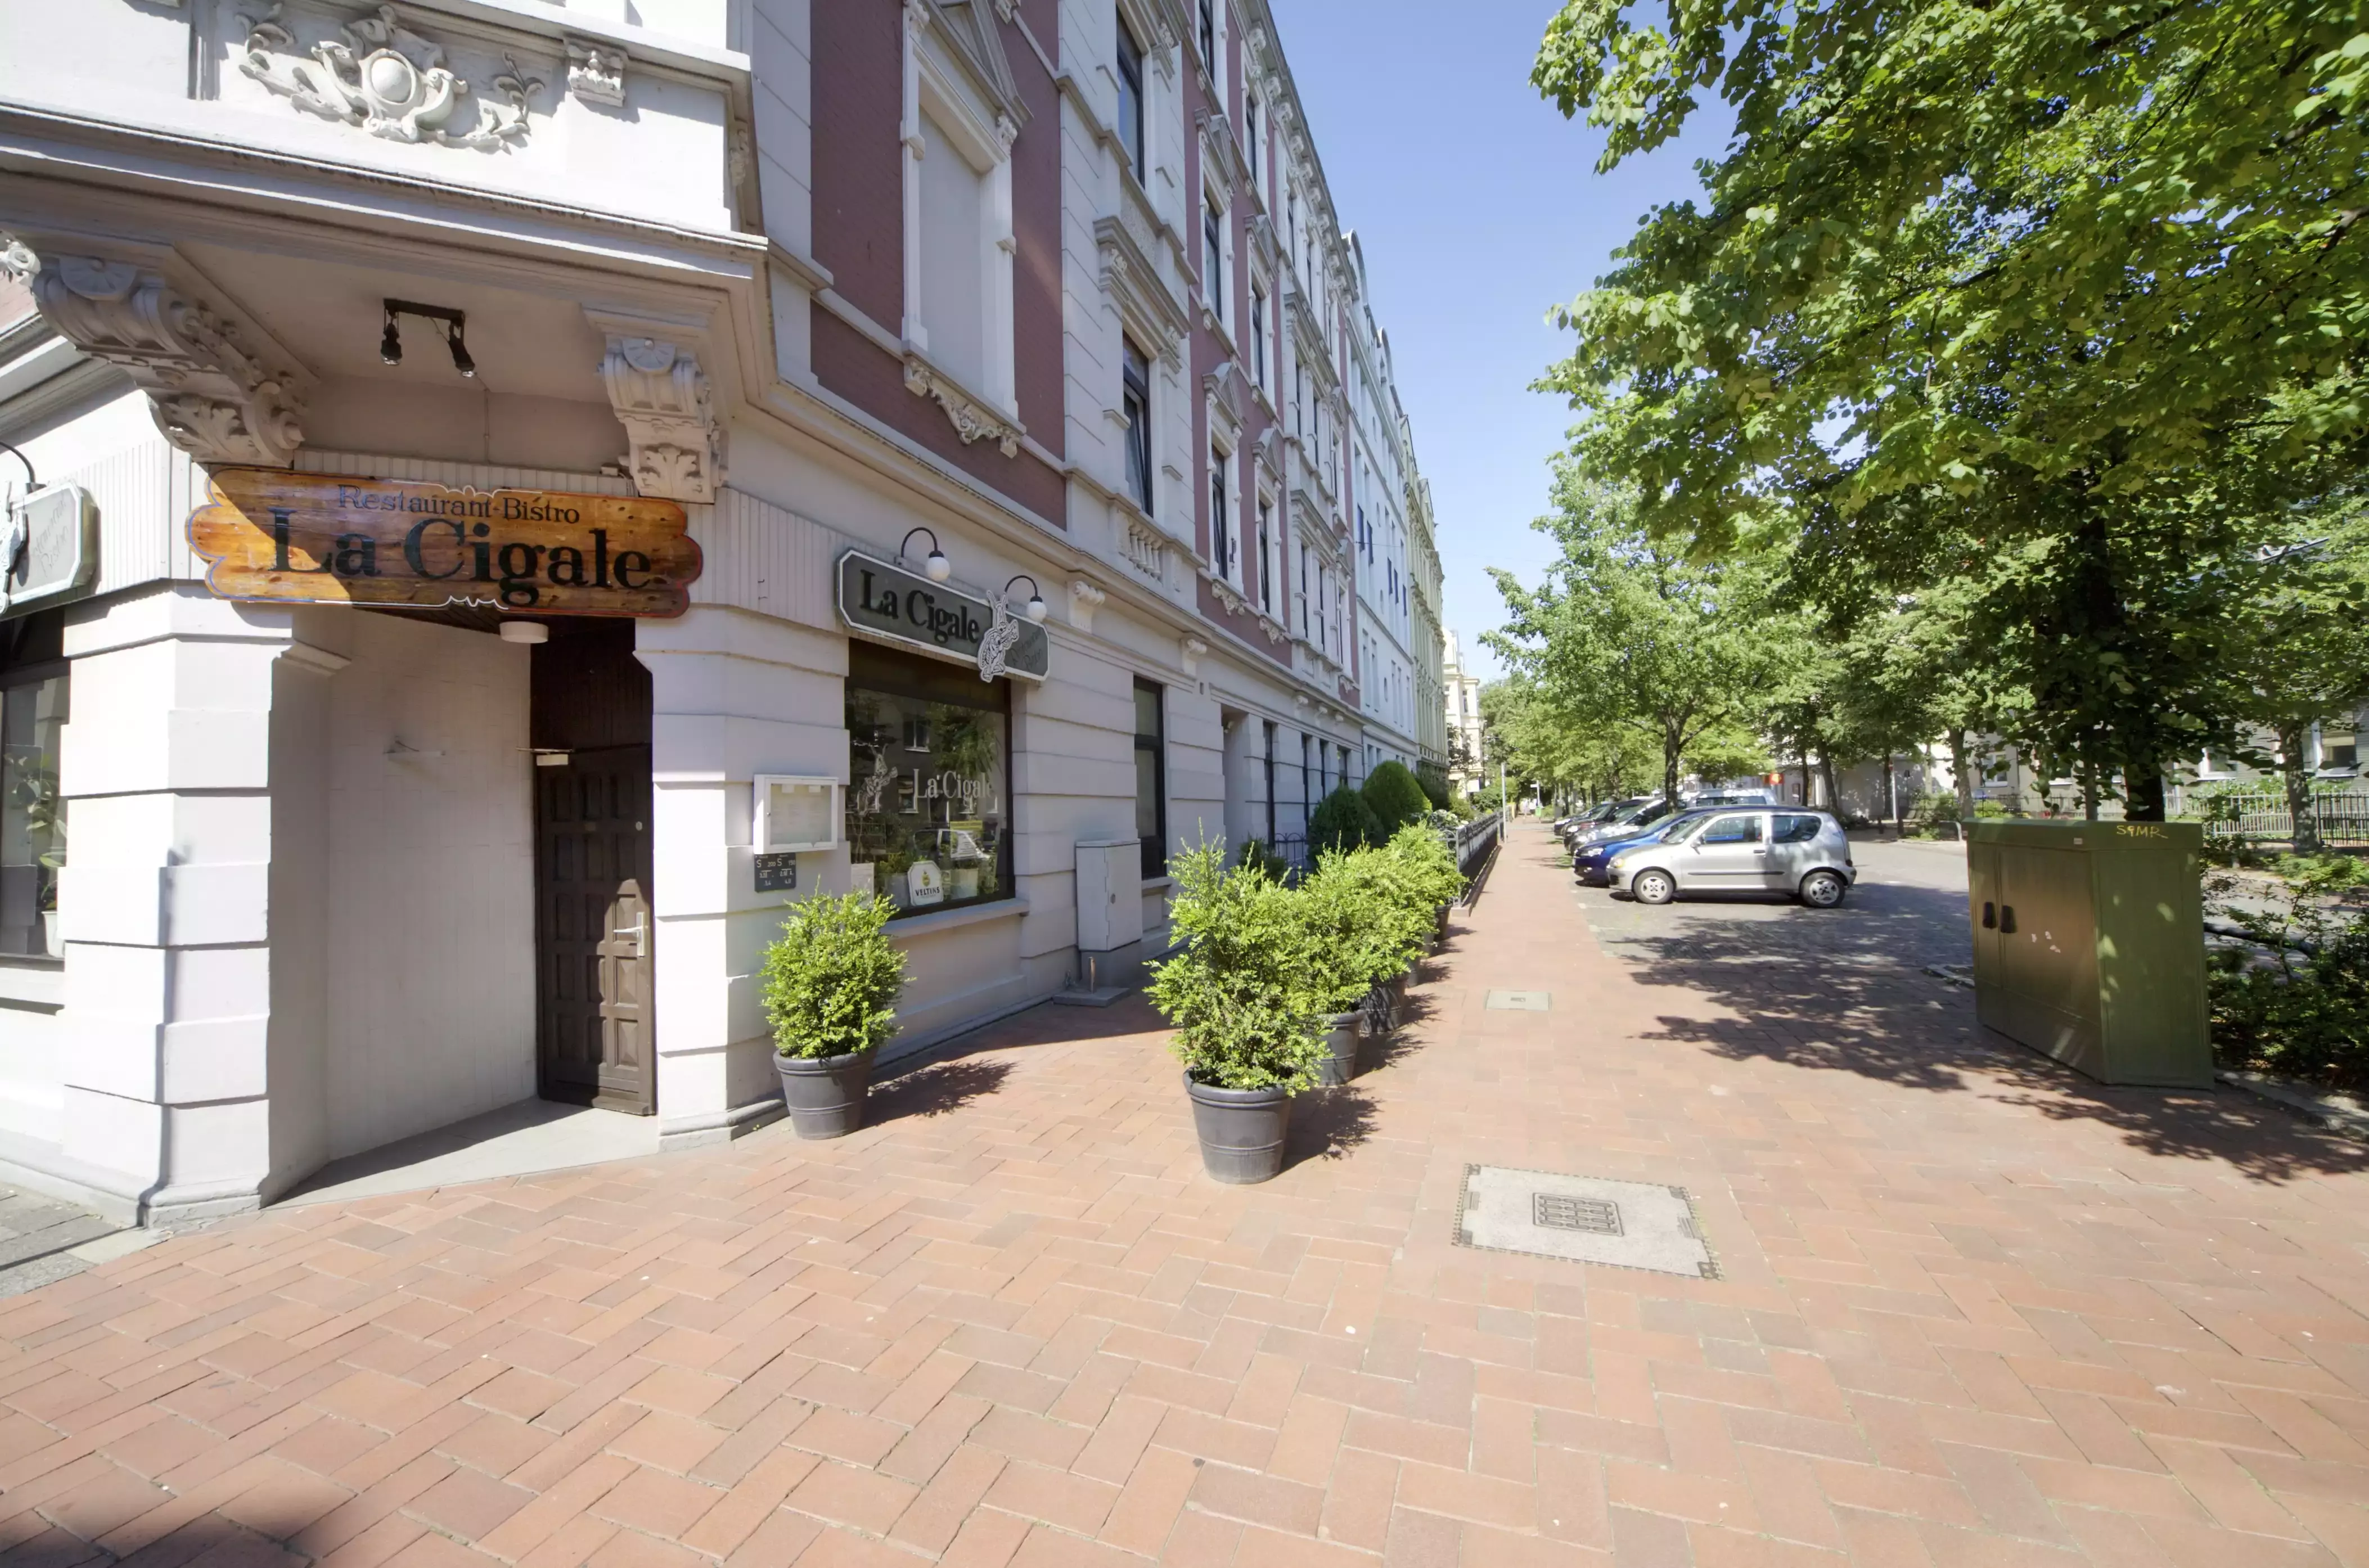 Bild des Restaurants und Bistros "La Cigale" in einem Gebäude mit verzierter Fassade